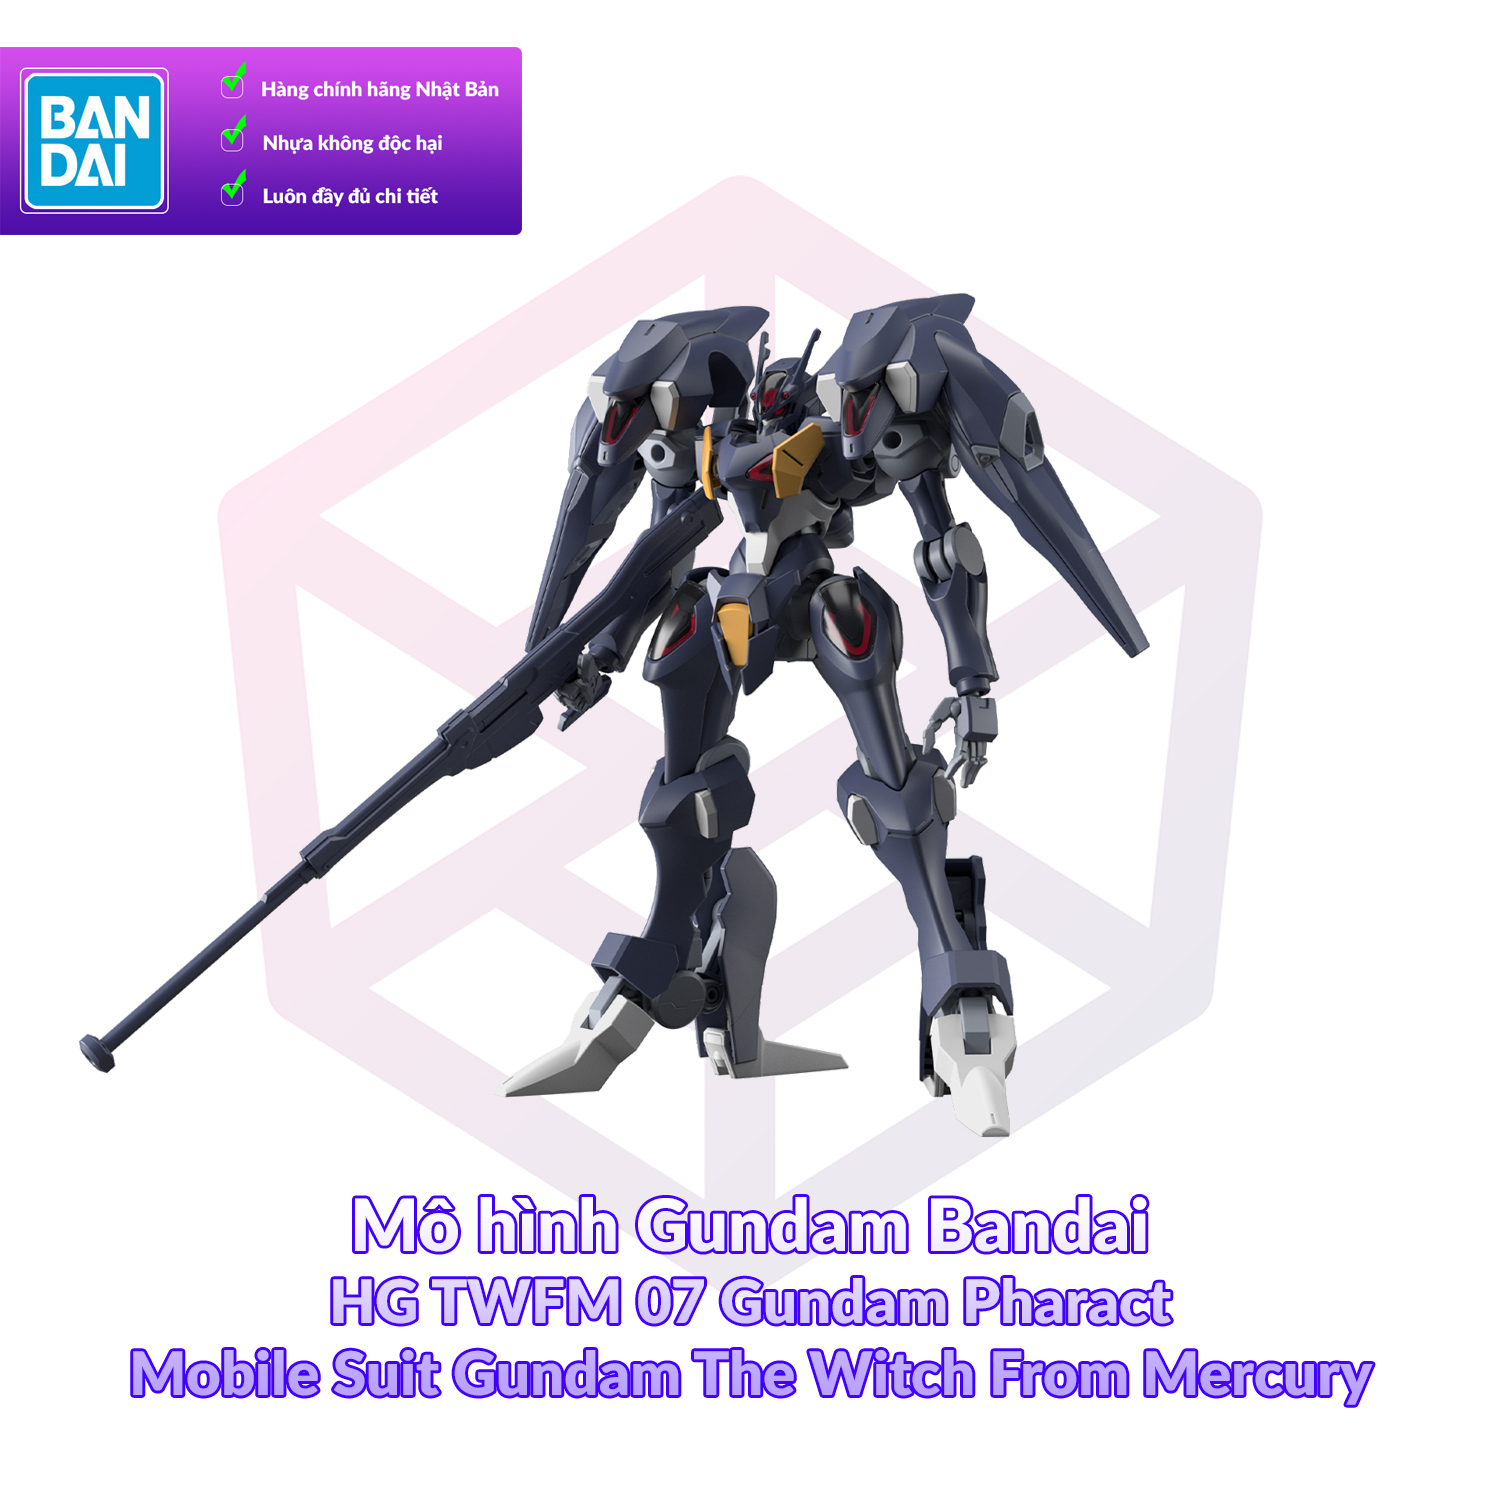 [7-11/12 VOUCHER 8%]Mô hình Gundam Bandai HG TWFM 07 Gundam Pharact 1/144 MS Gundam TWFM [GDB] [BHG]